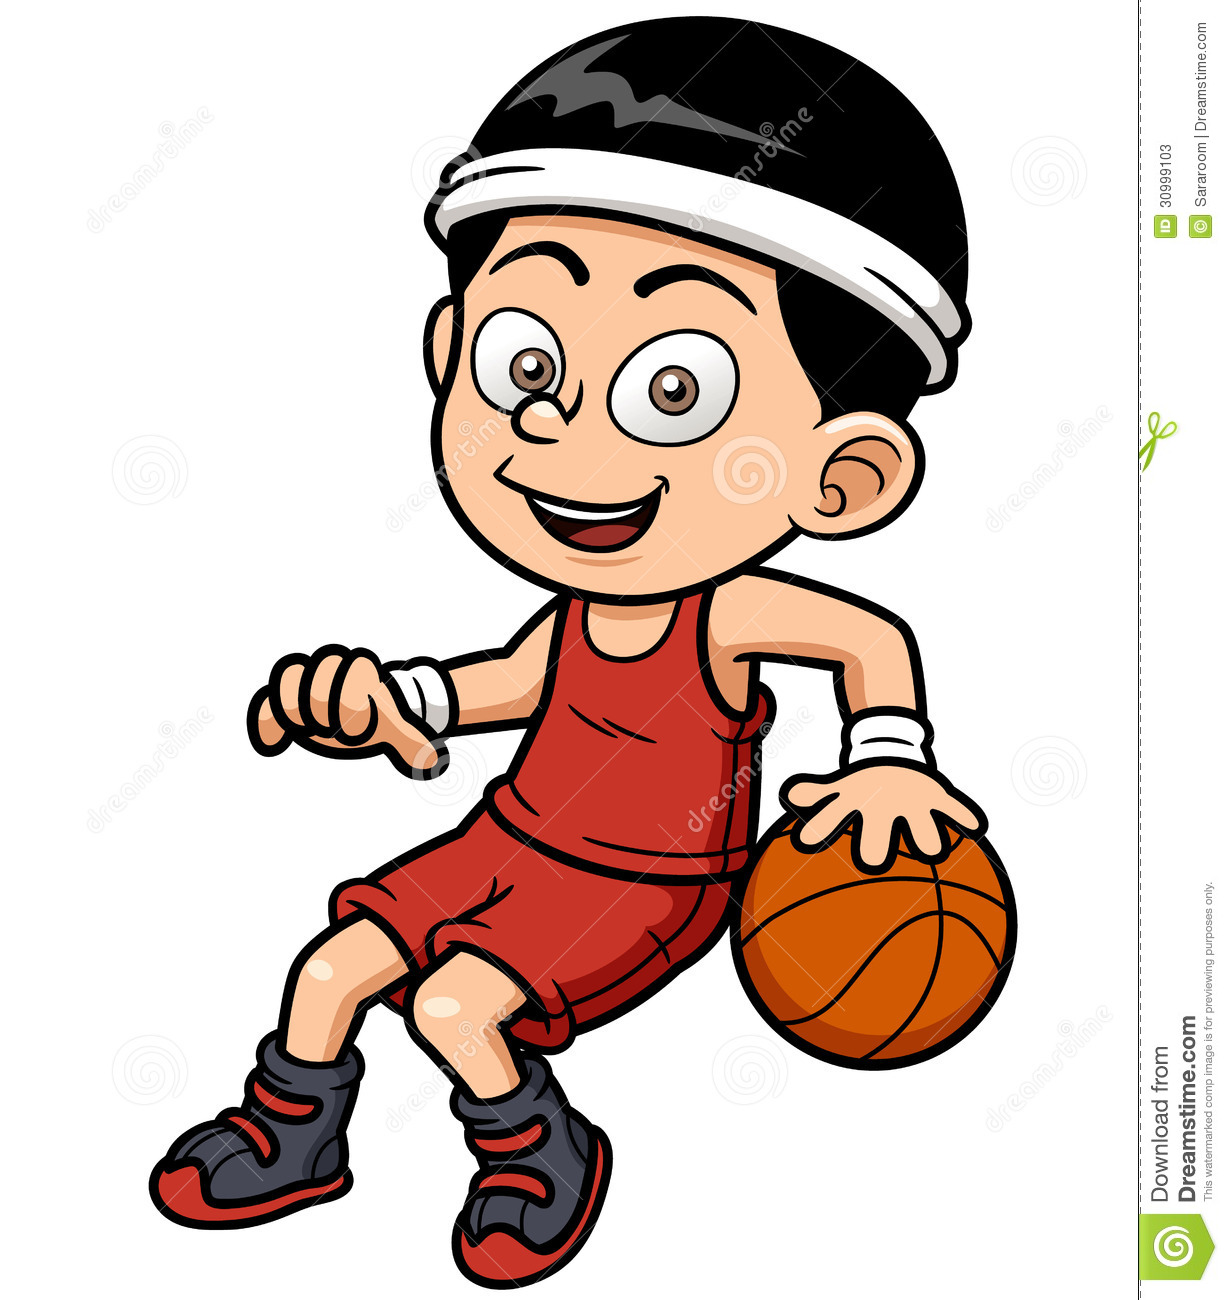 Cartoon Basketball Player Stock Photos   Image  30999103